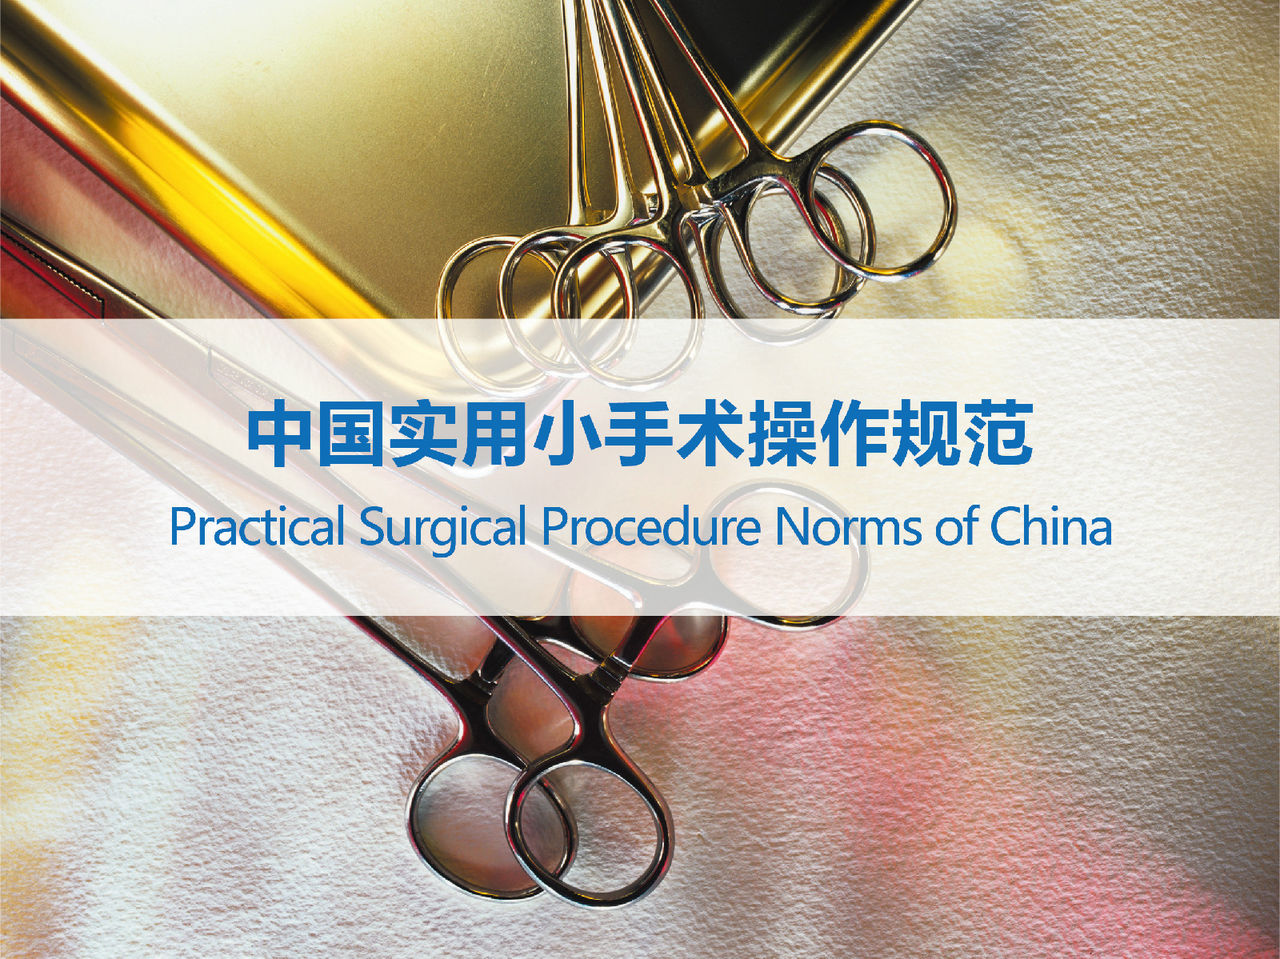 中國實用小手術操作規範